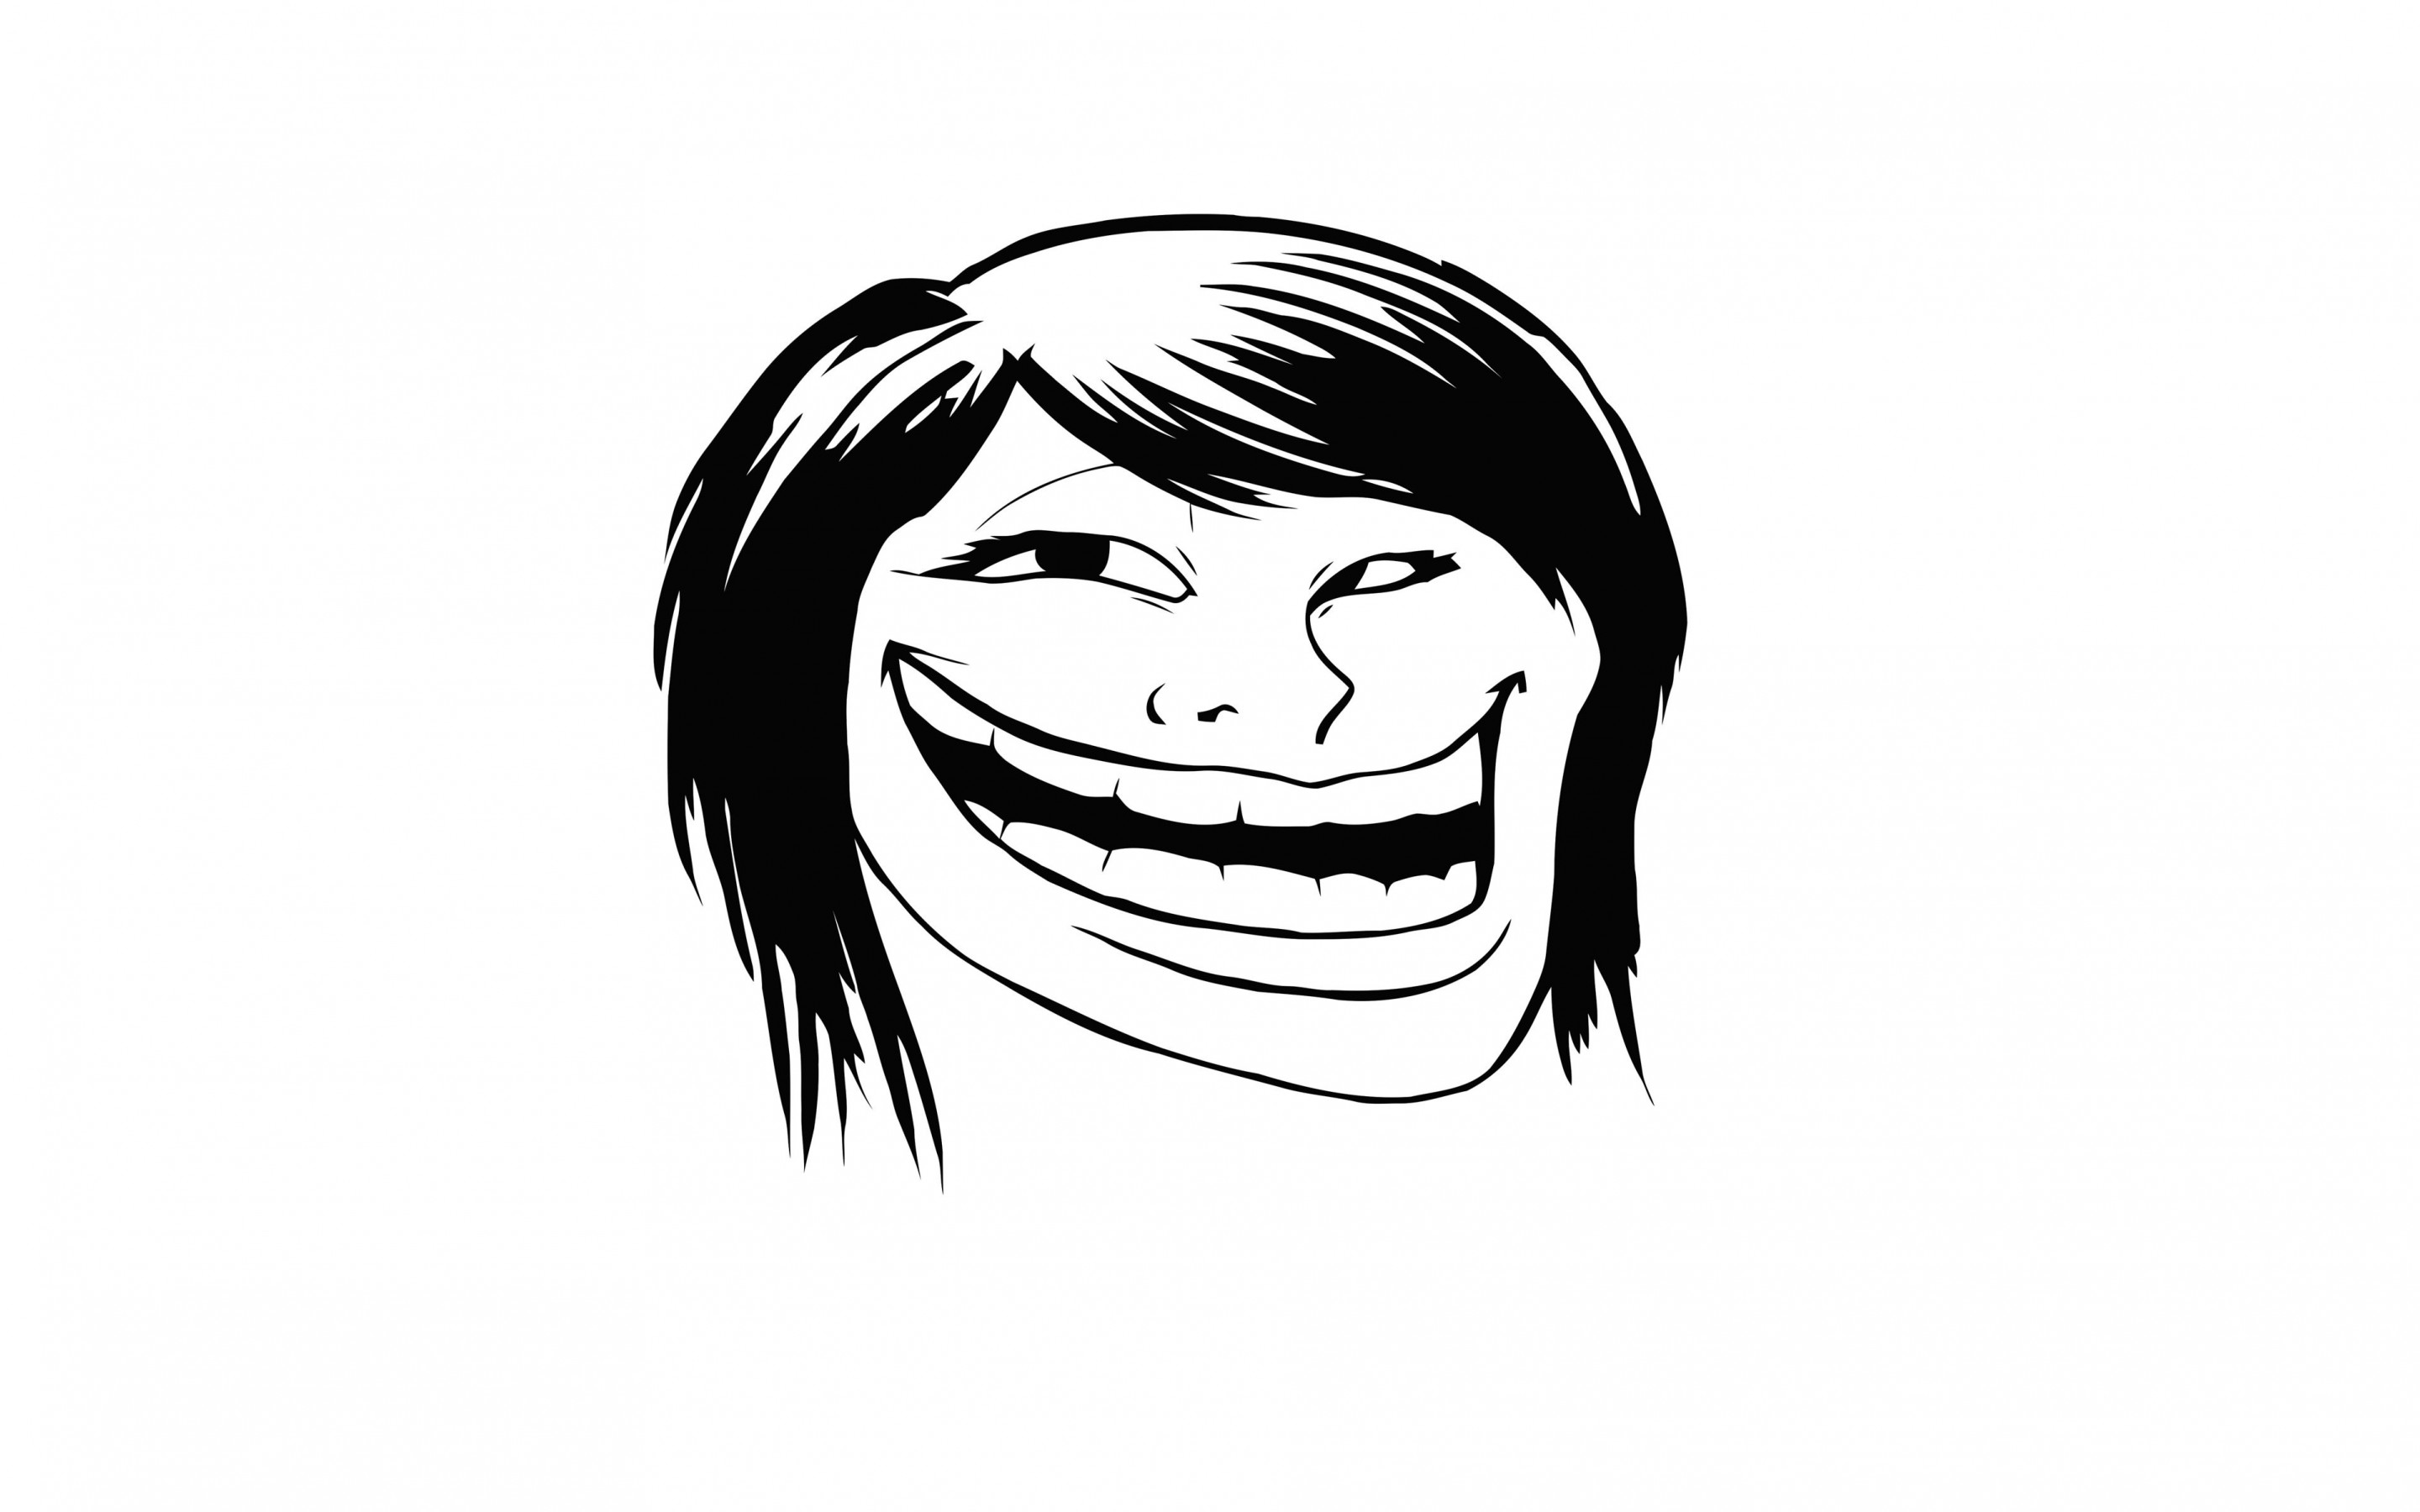 Female Troll Face Meme Wallpaper for Desktop 2880x1800